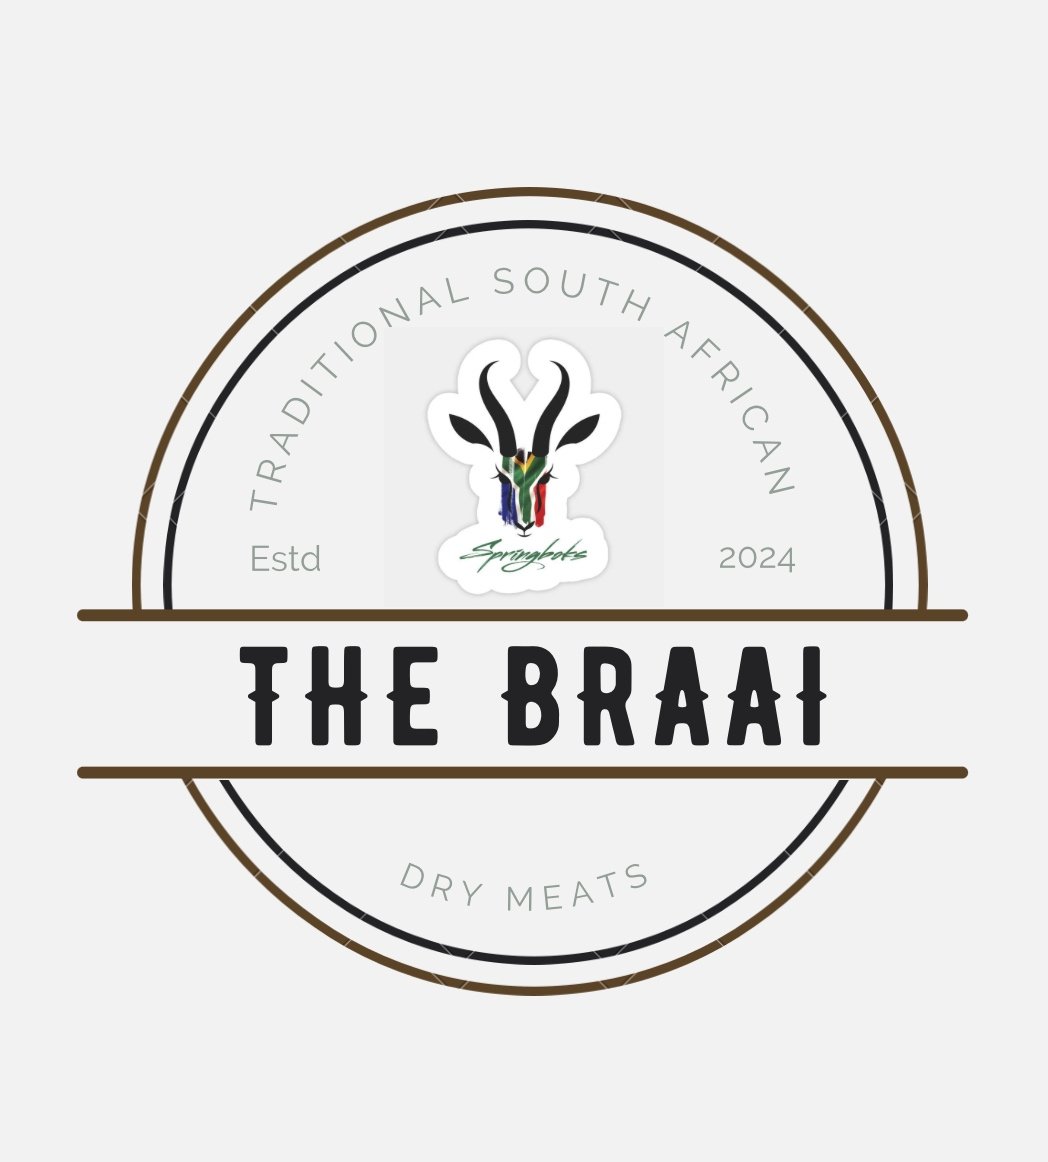 The Braai